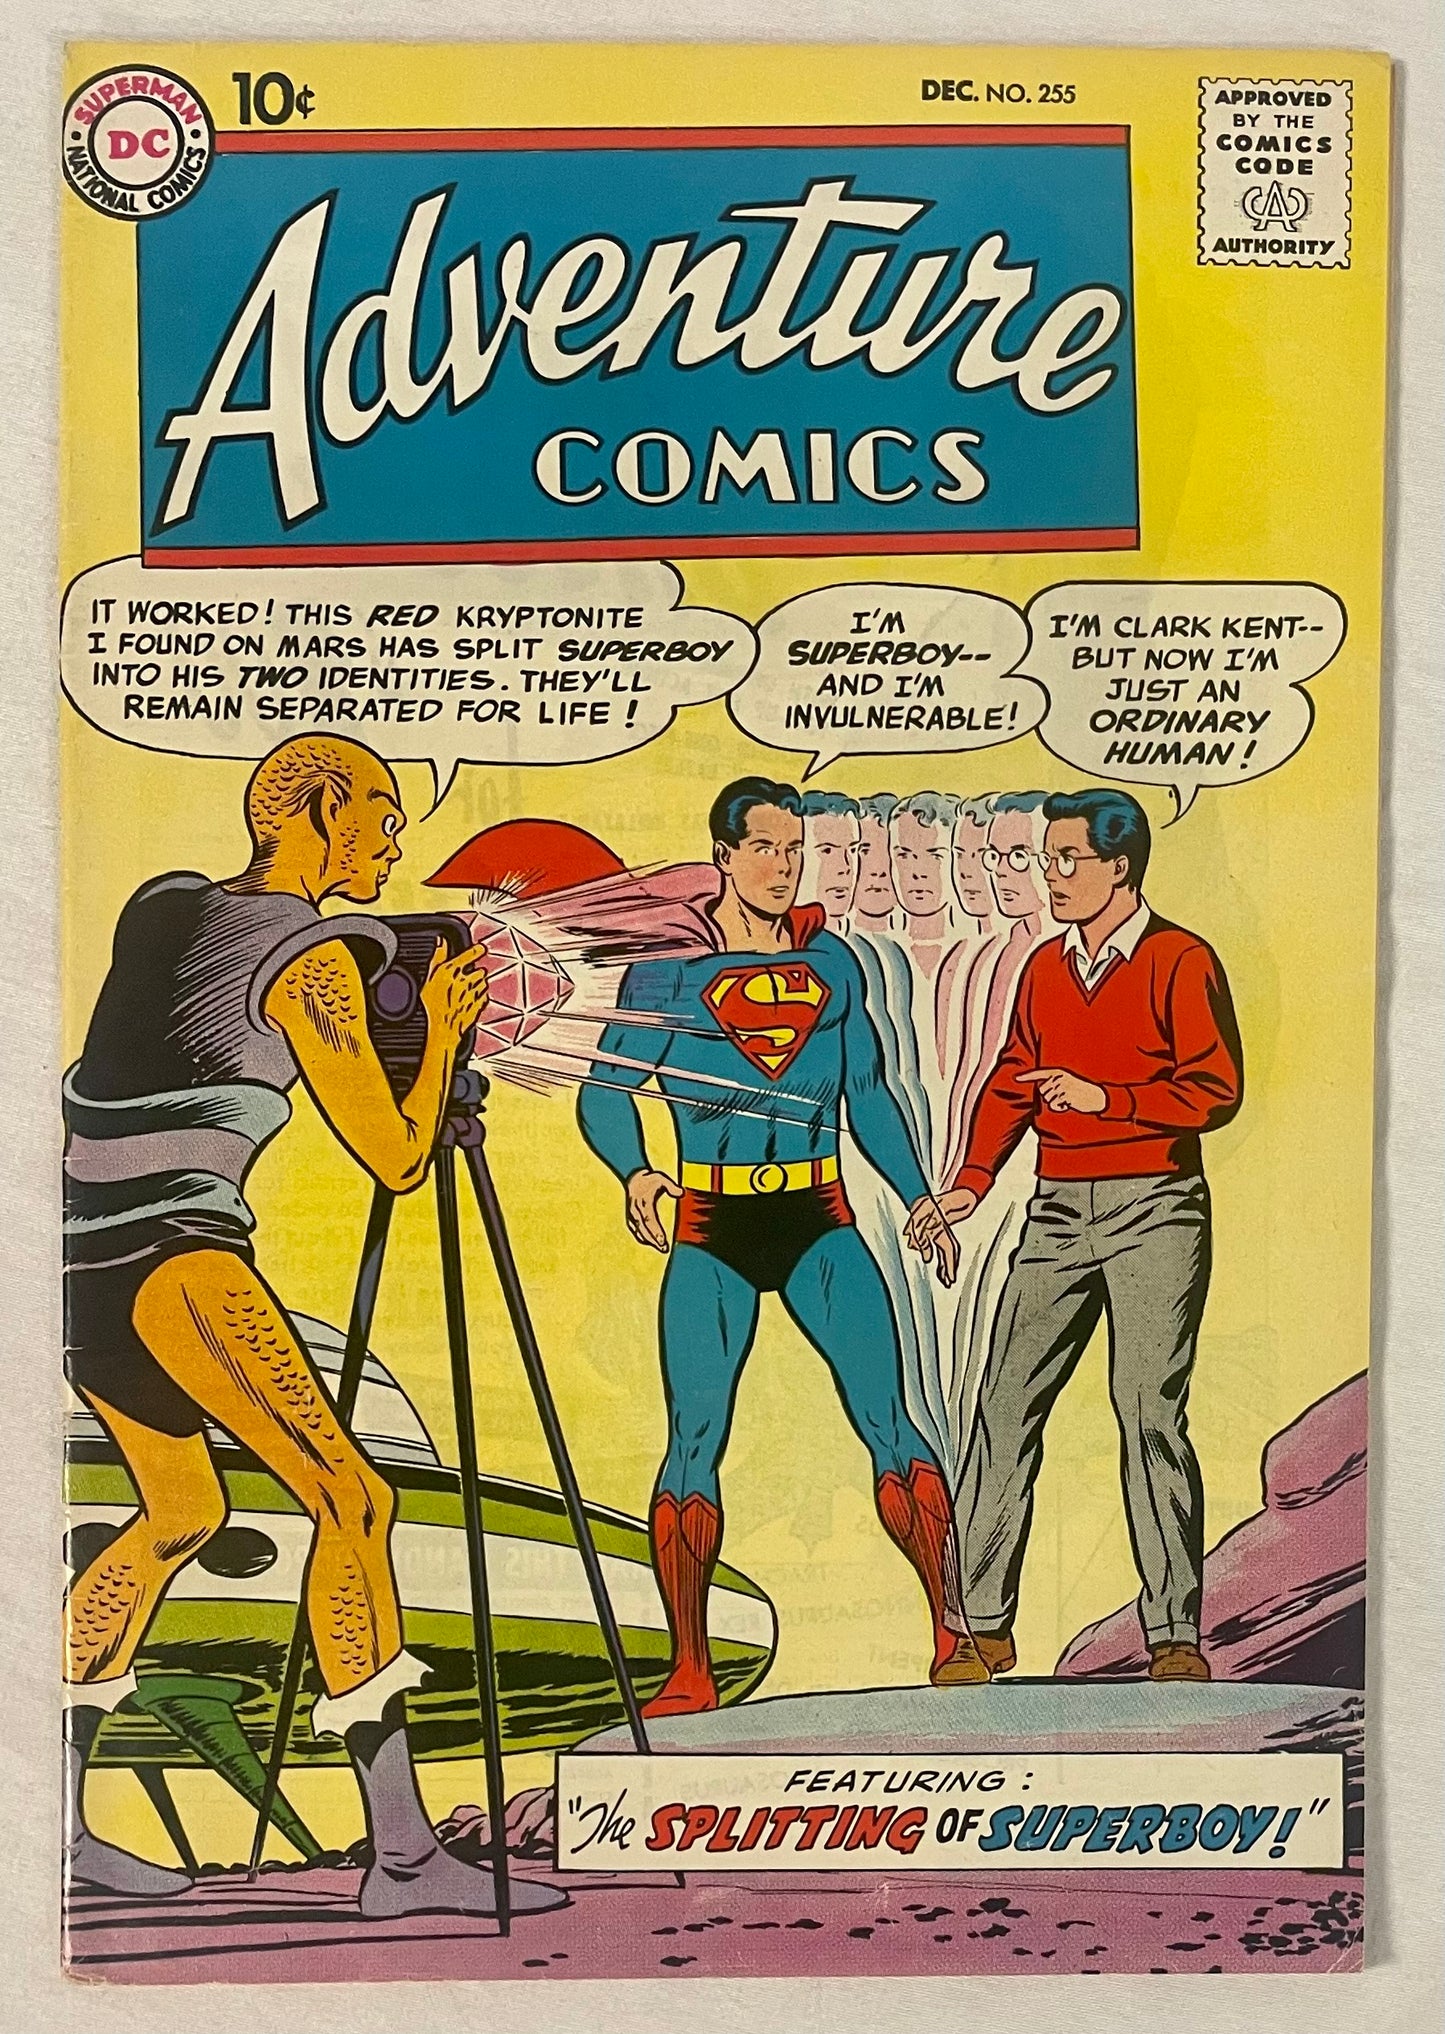 DC Comics Adventure Comics No. 255